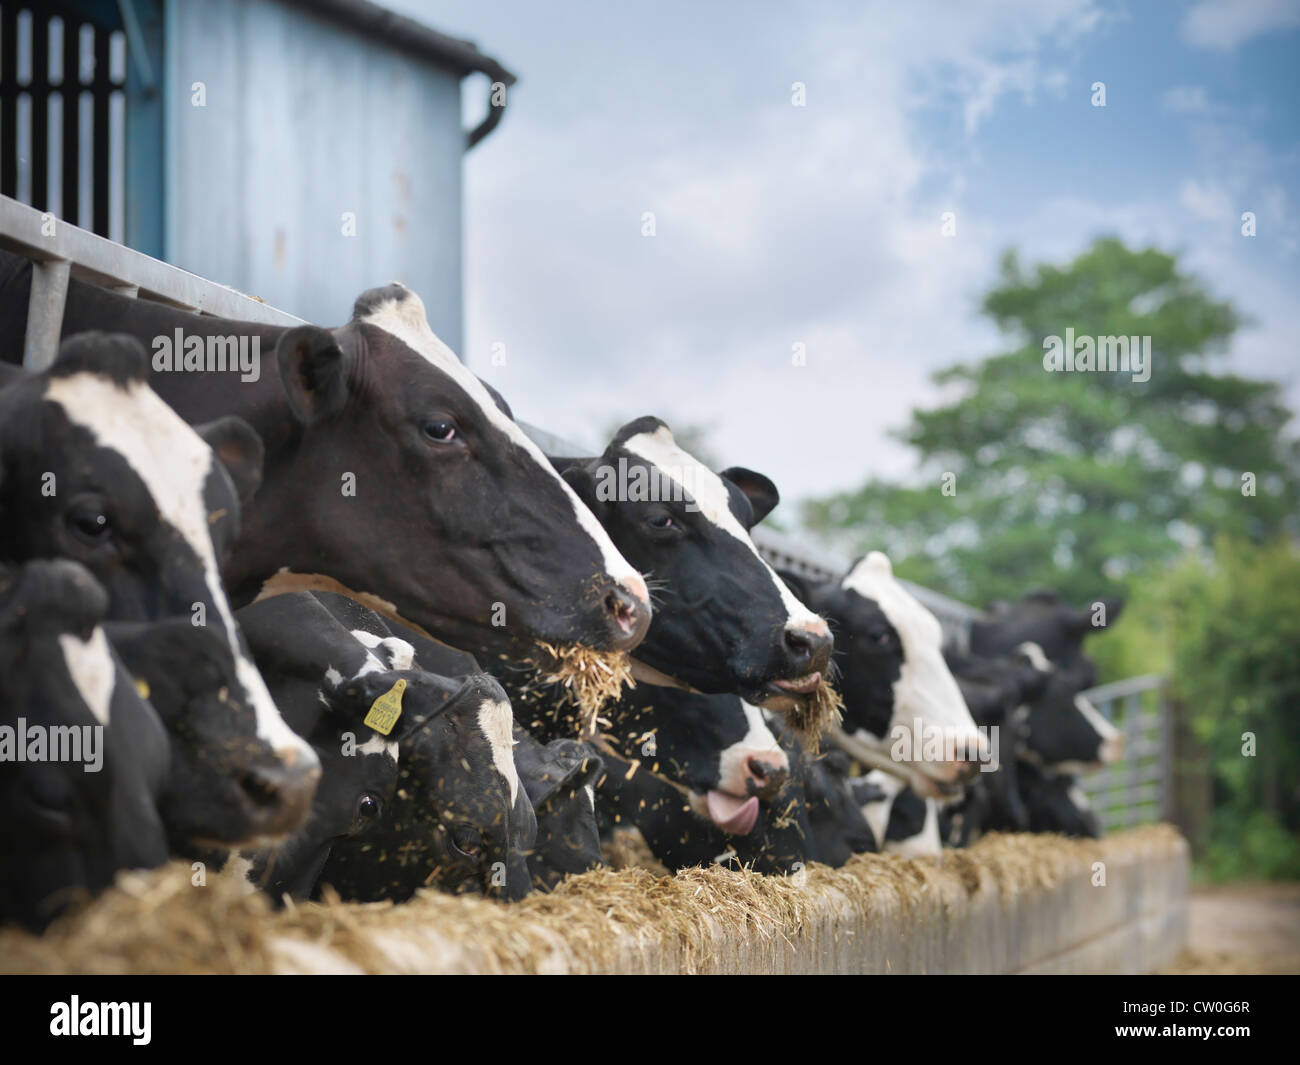 Las vacas comen heno en el granero Foto de stock